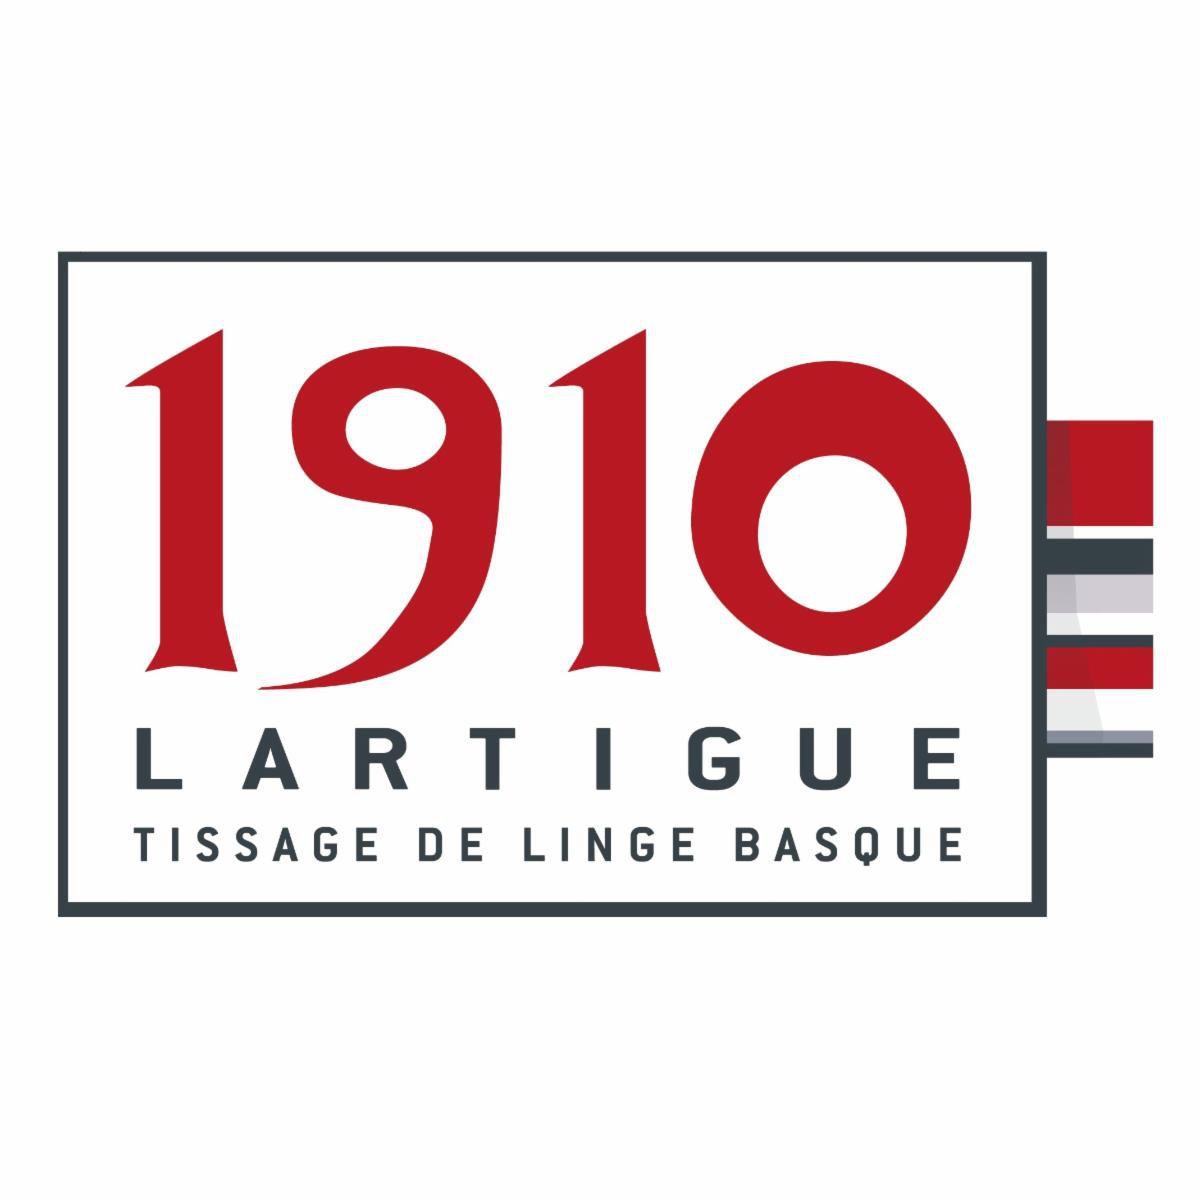 Lartigue 1910 Biarritz